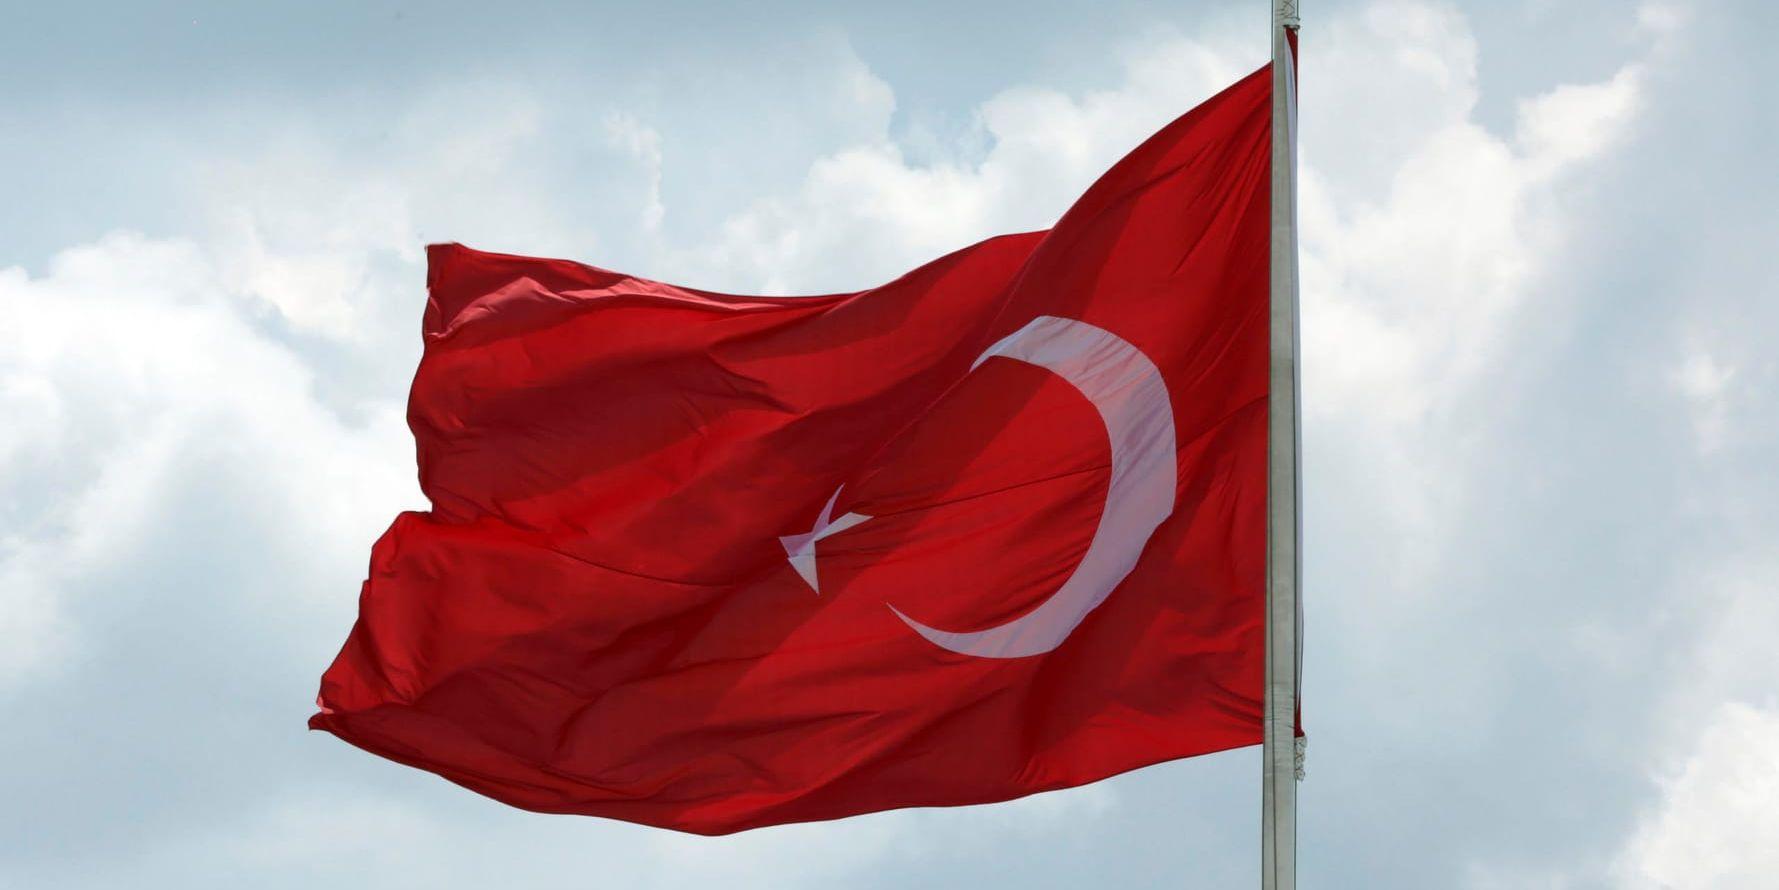 250 lokala ledare sparkas i Turkiet. Arkivbild.